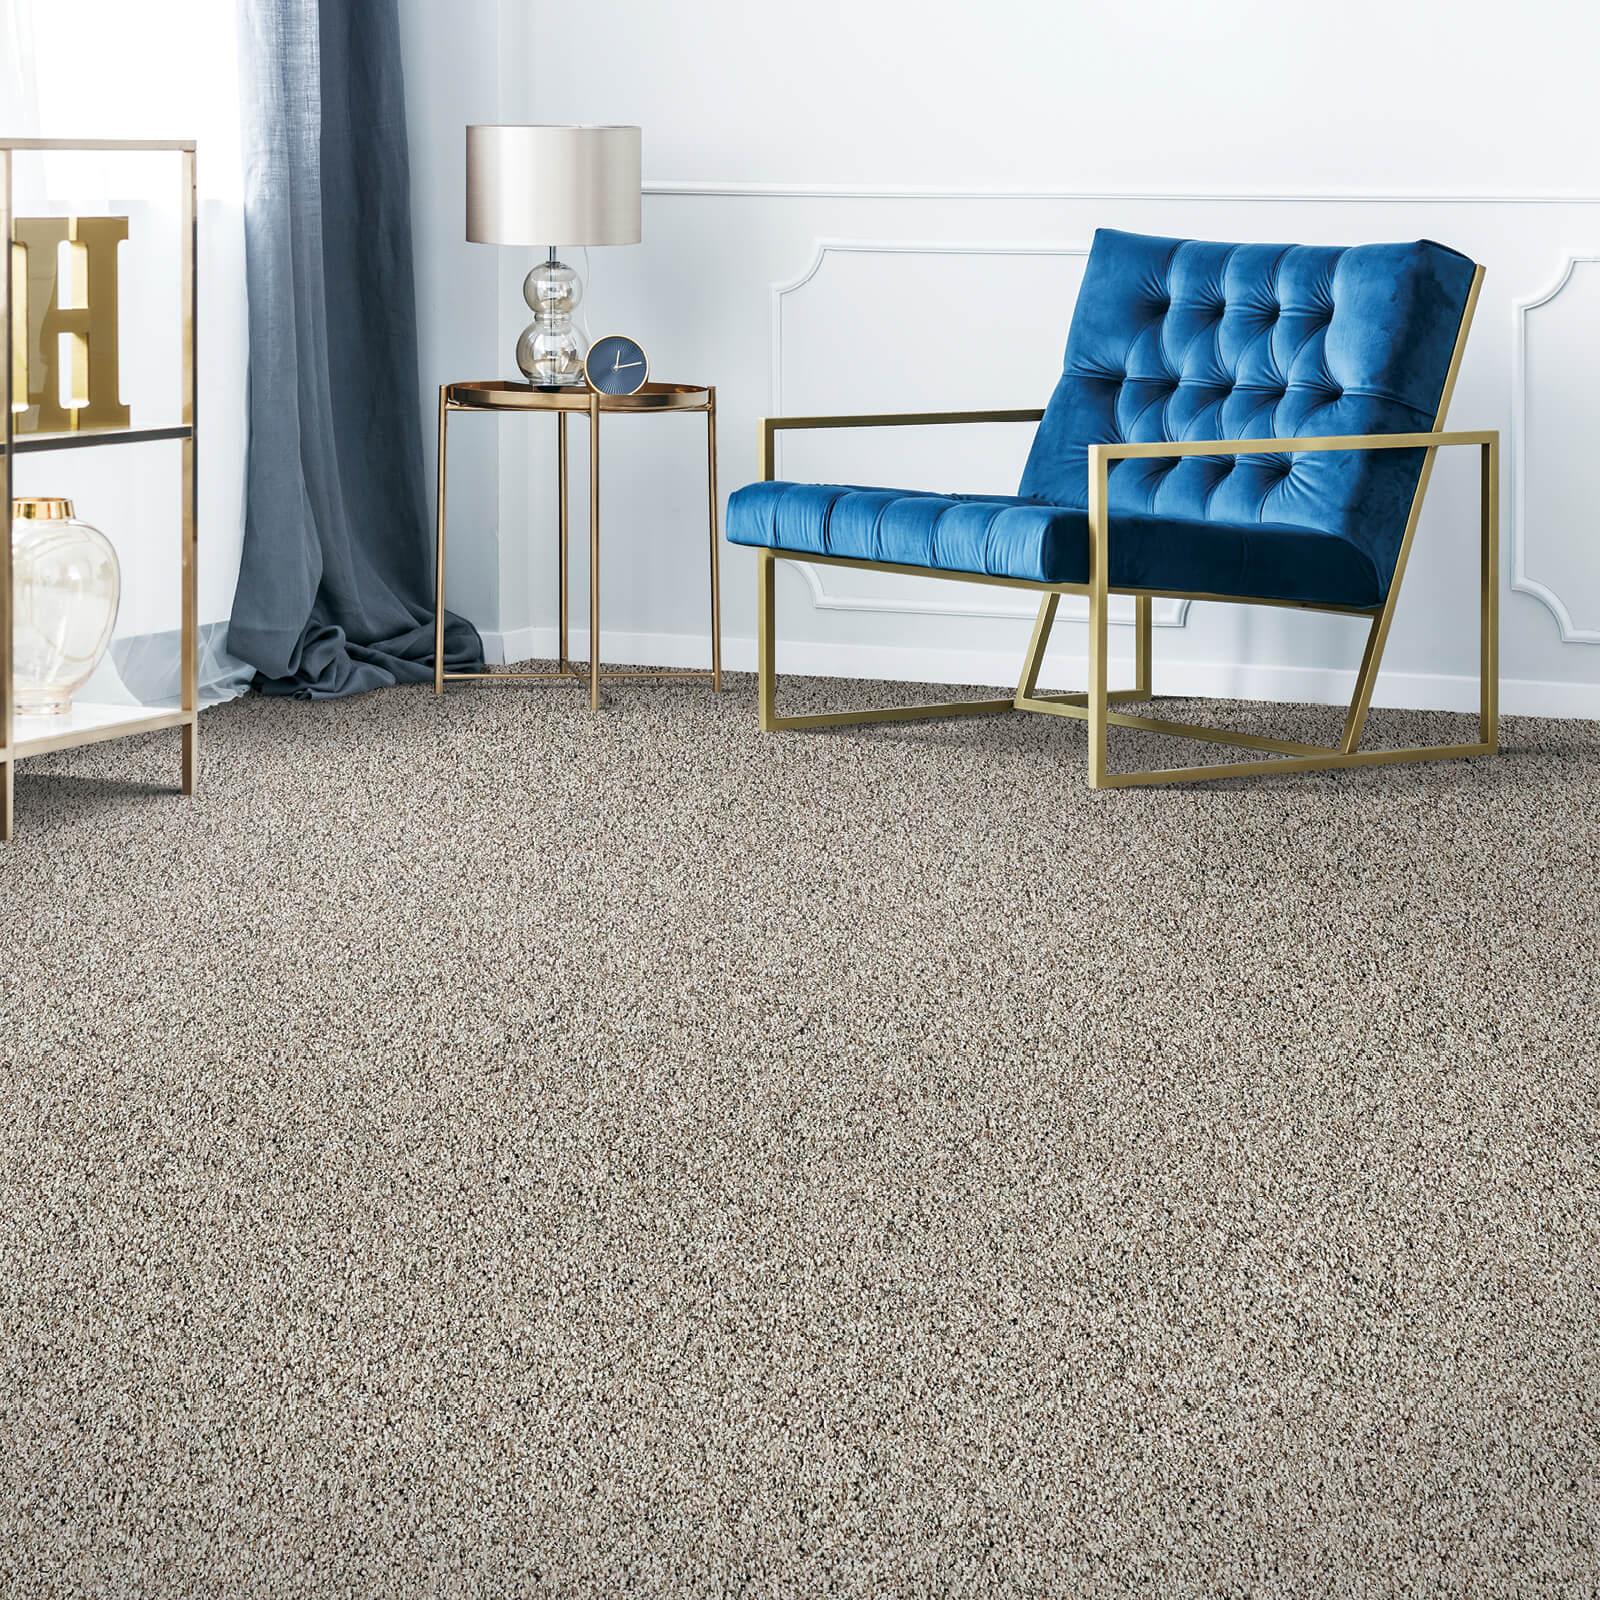 Carpet flooring | Flooring Direct